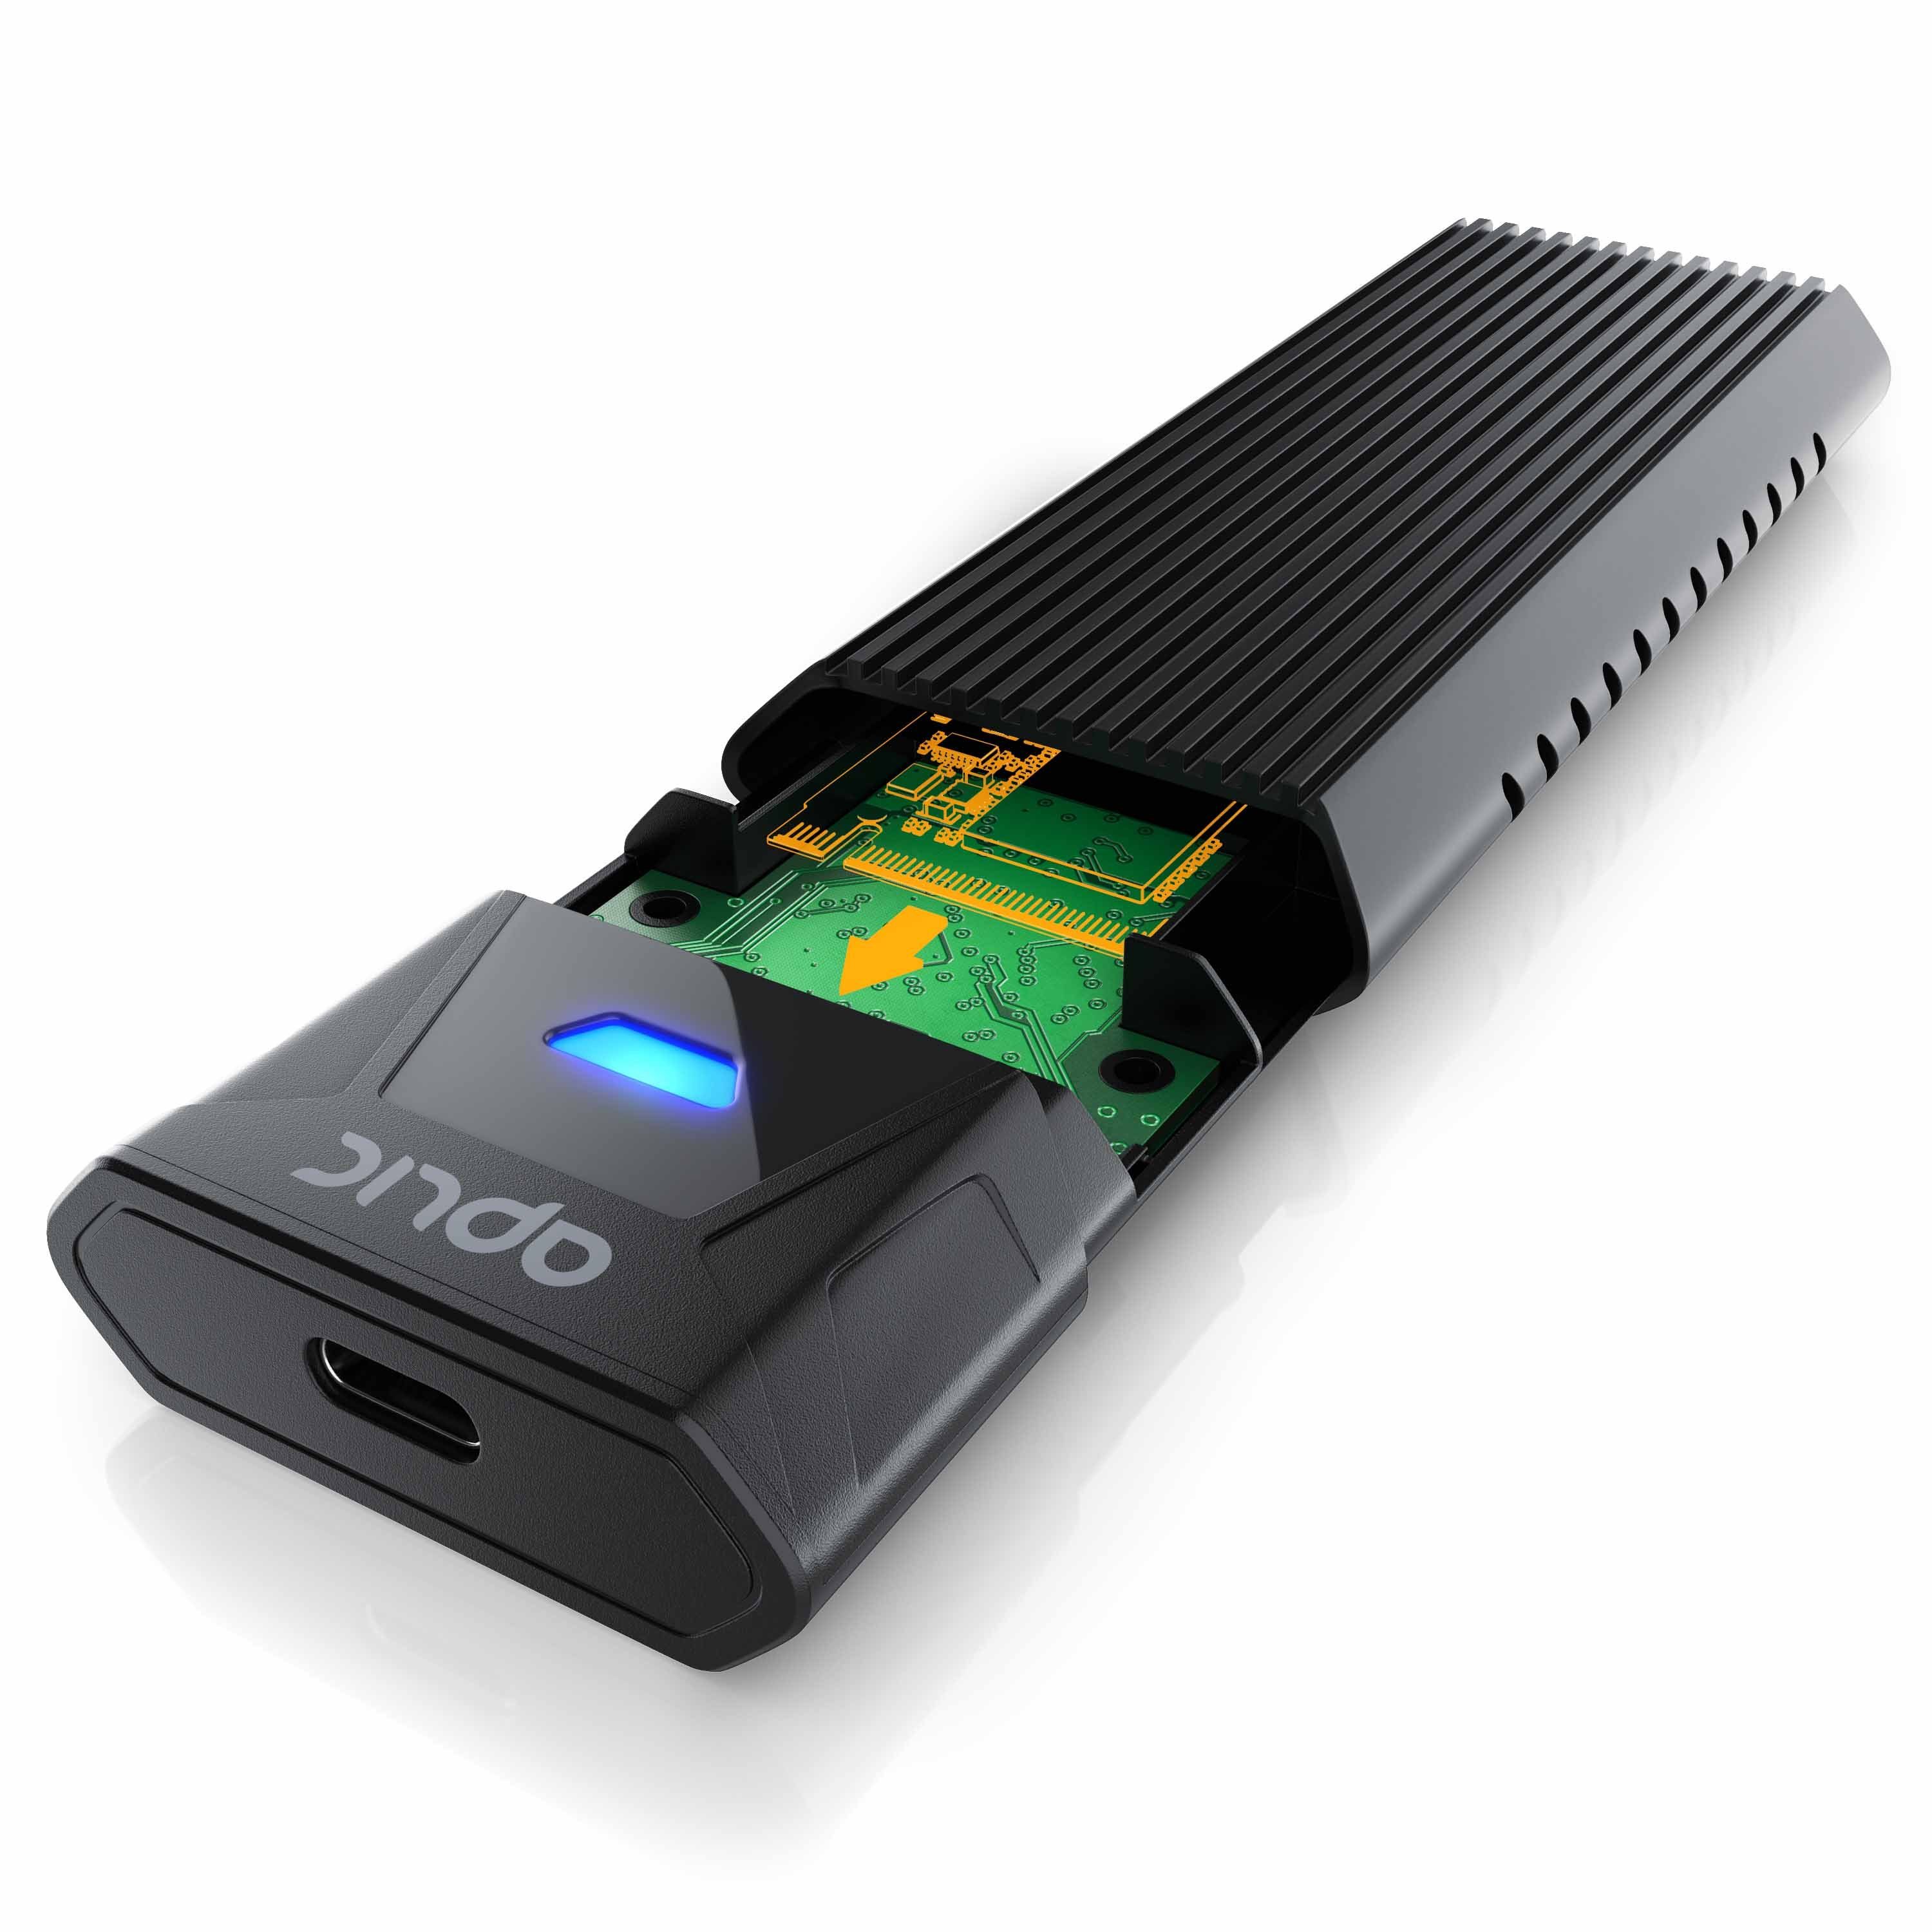 SATA 3.2 PCIe M.2 USB 3.0 Gehäuse Aplic 2, Festplatten-Gehäuse, kompatibel Gen NVMe und